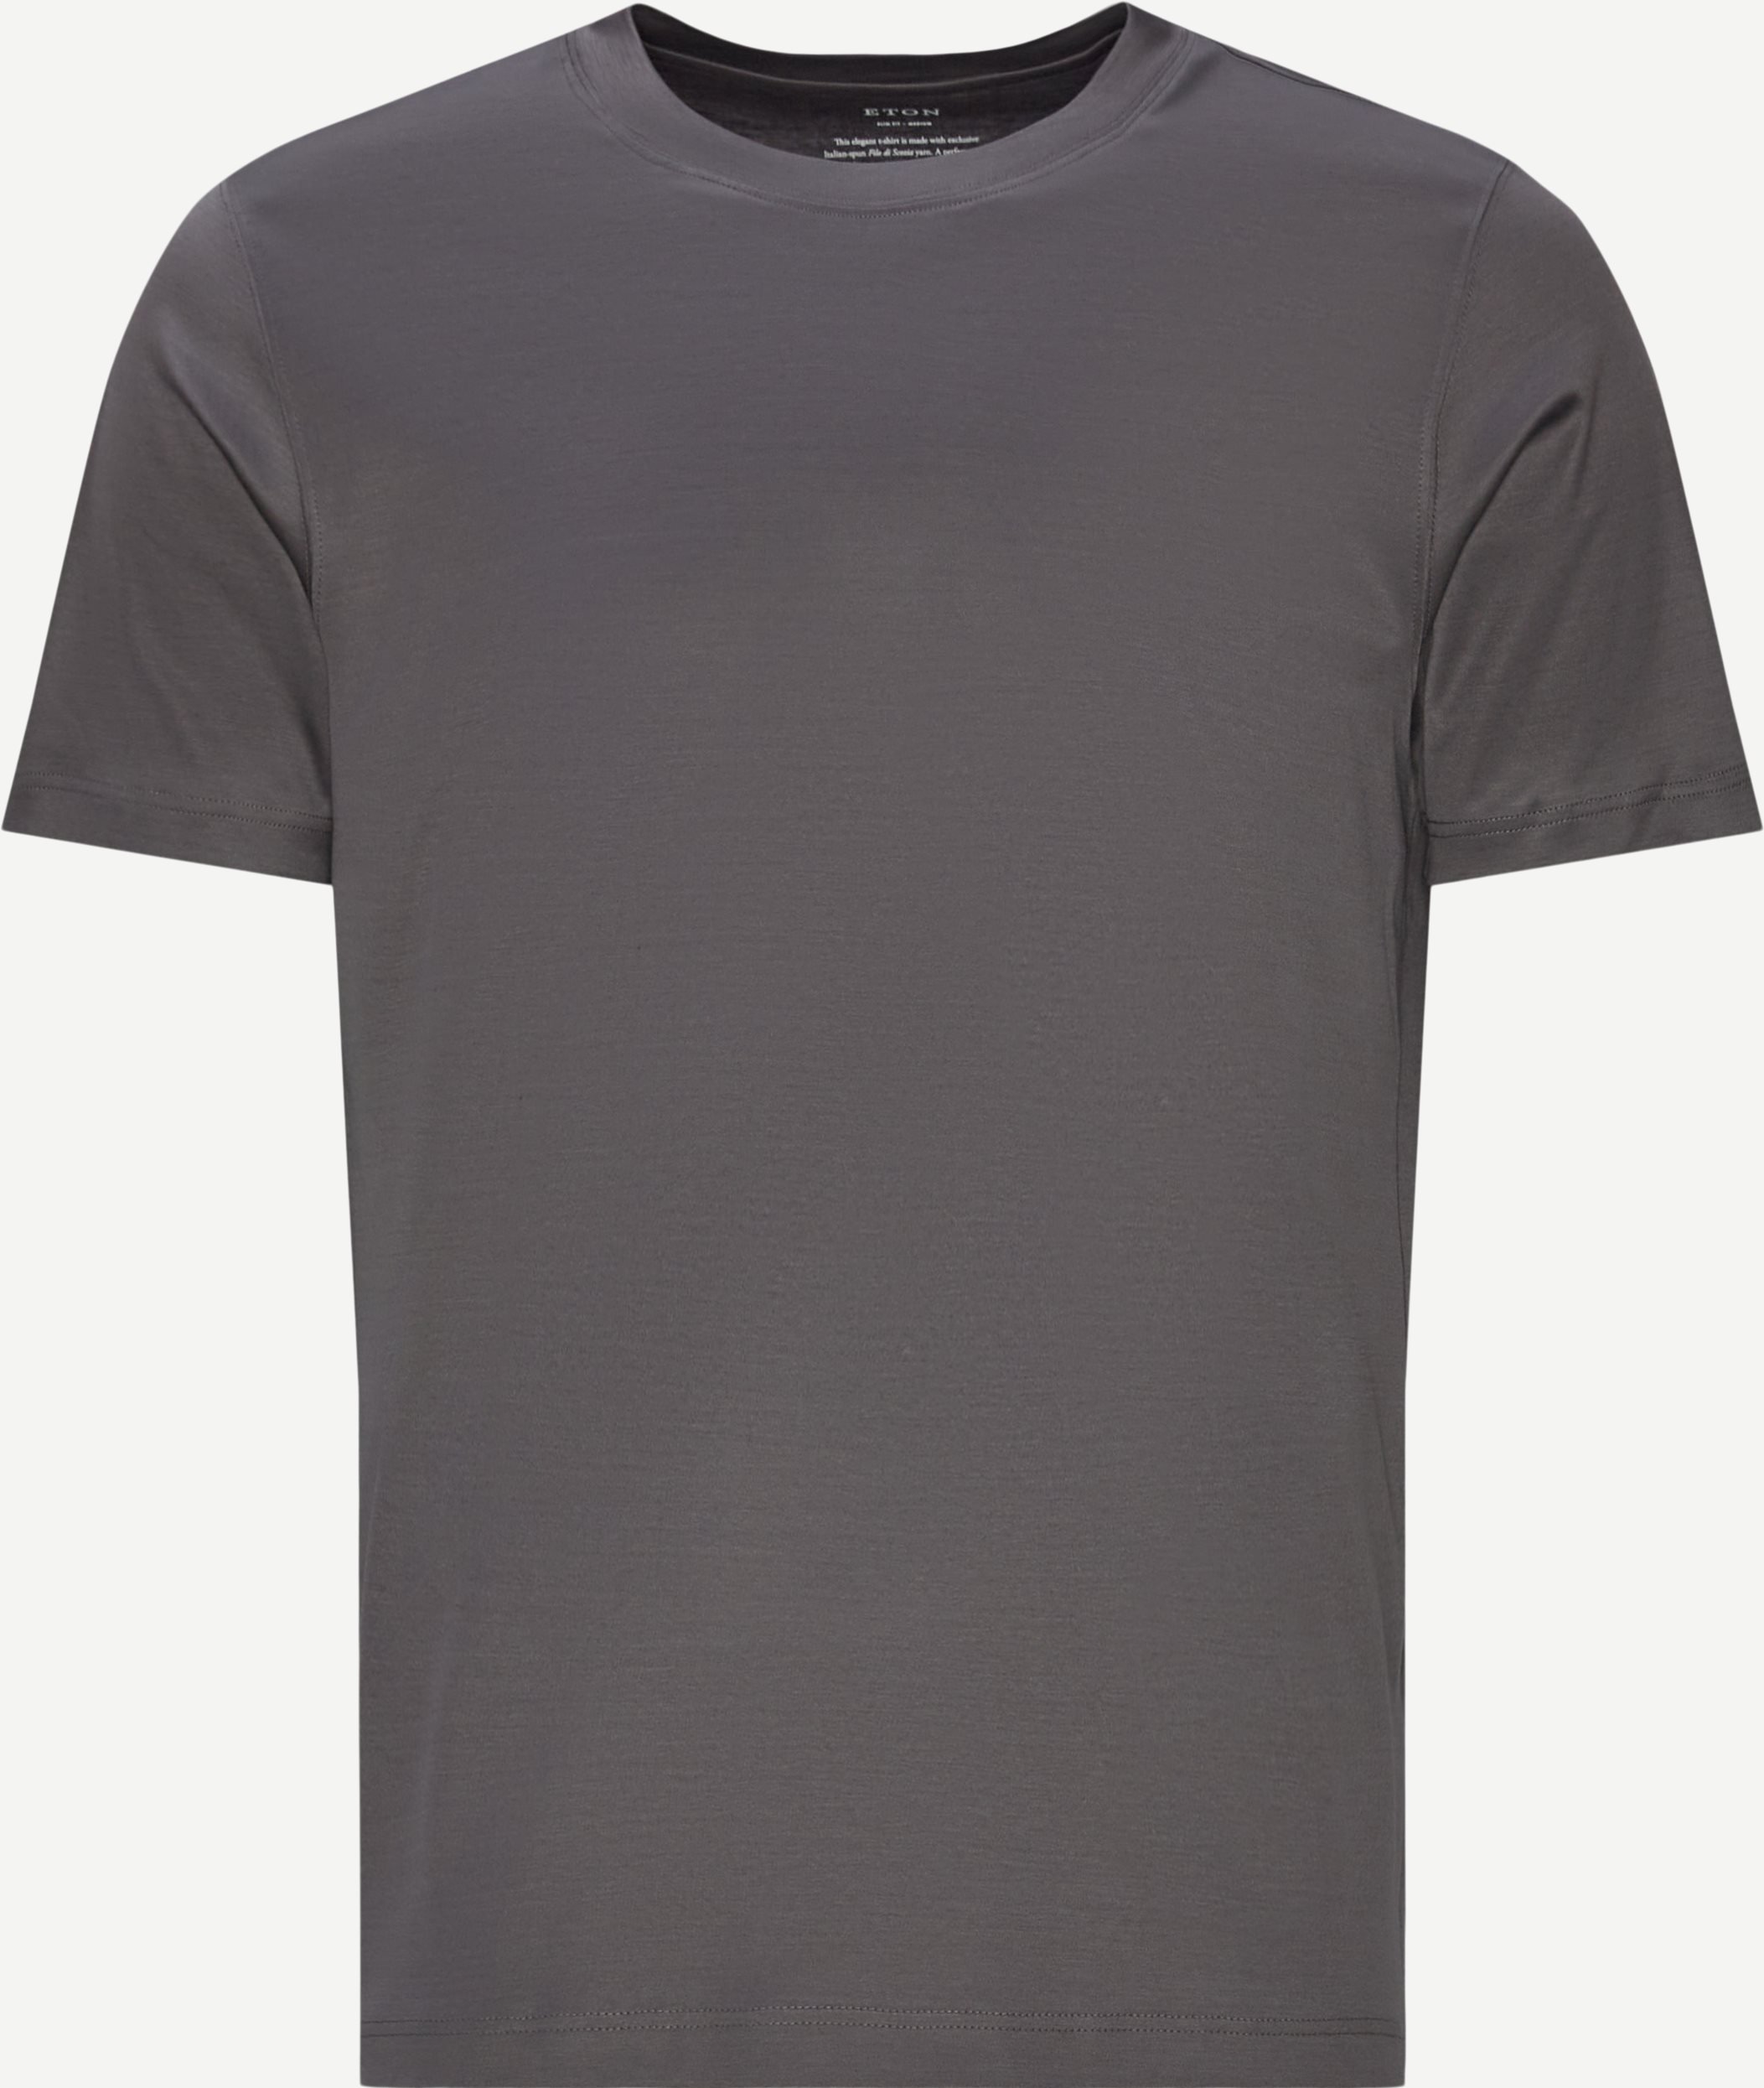 T-shirts - Slim fit - Grå